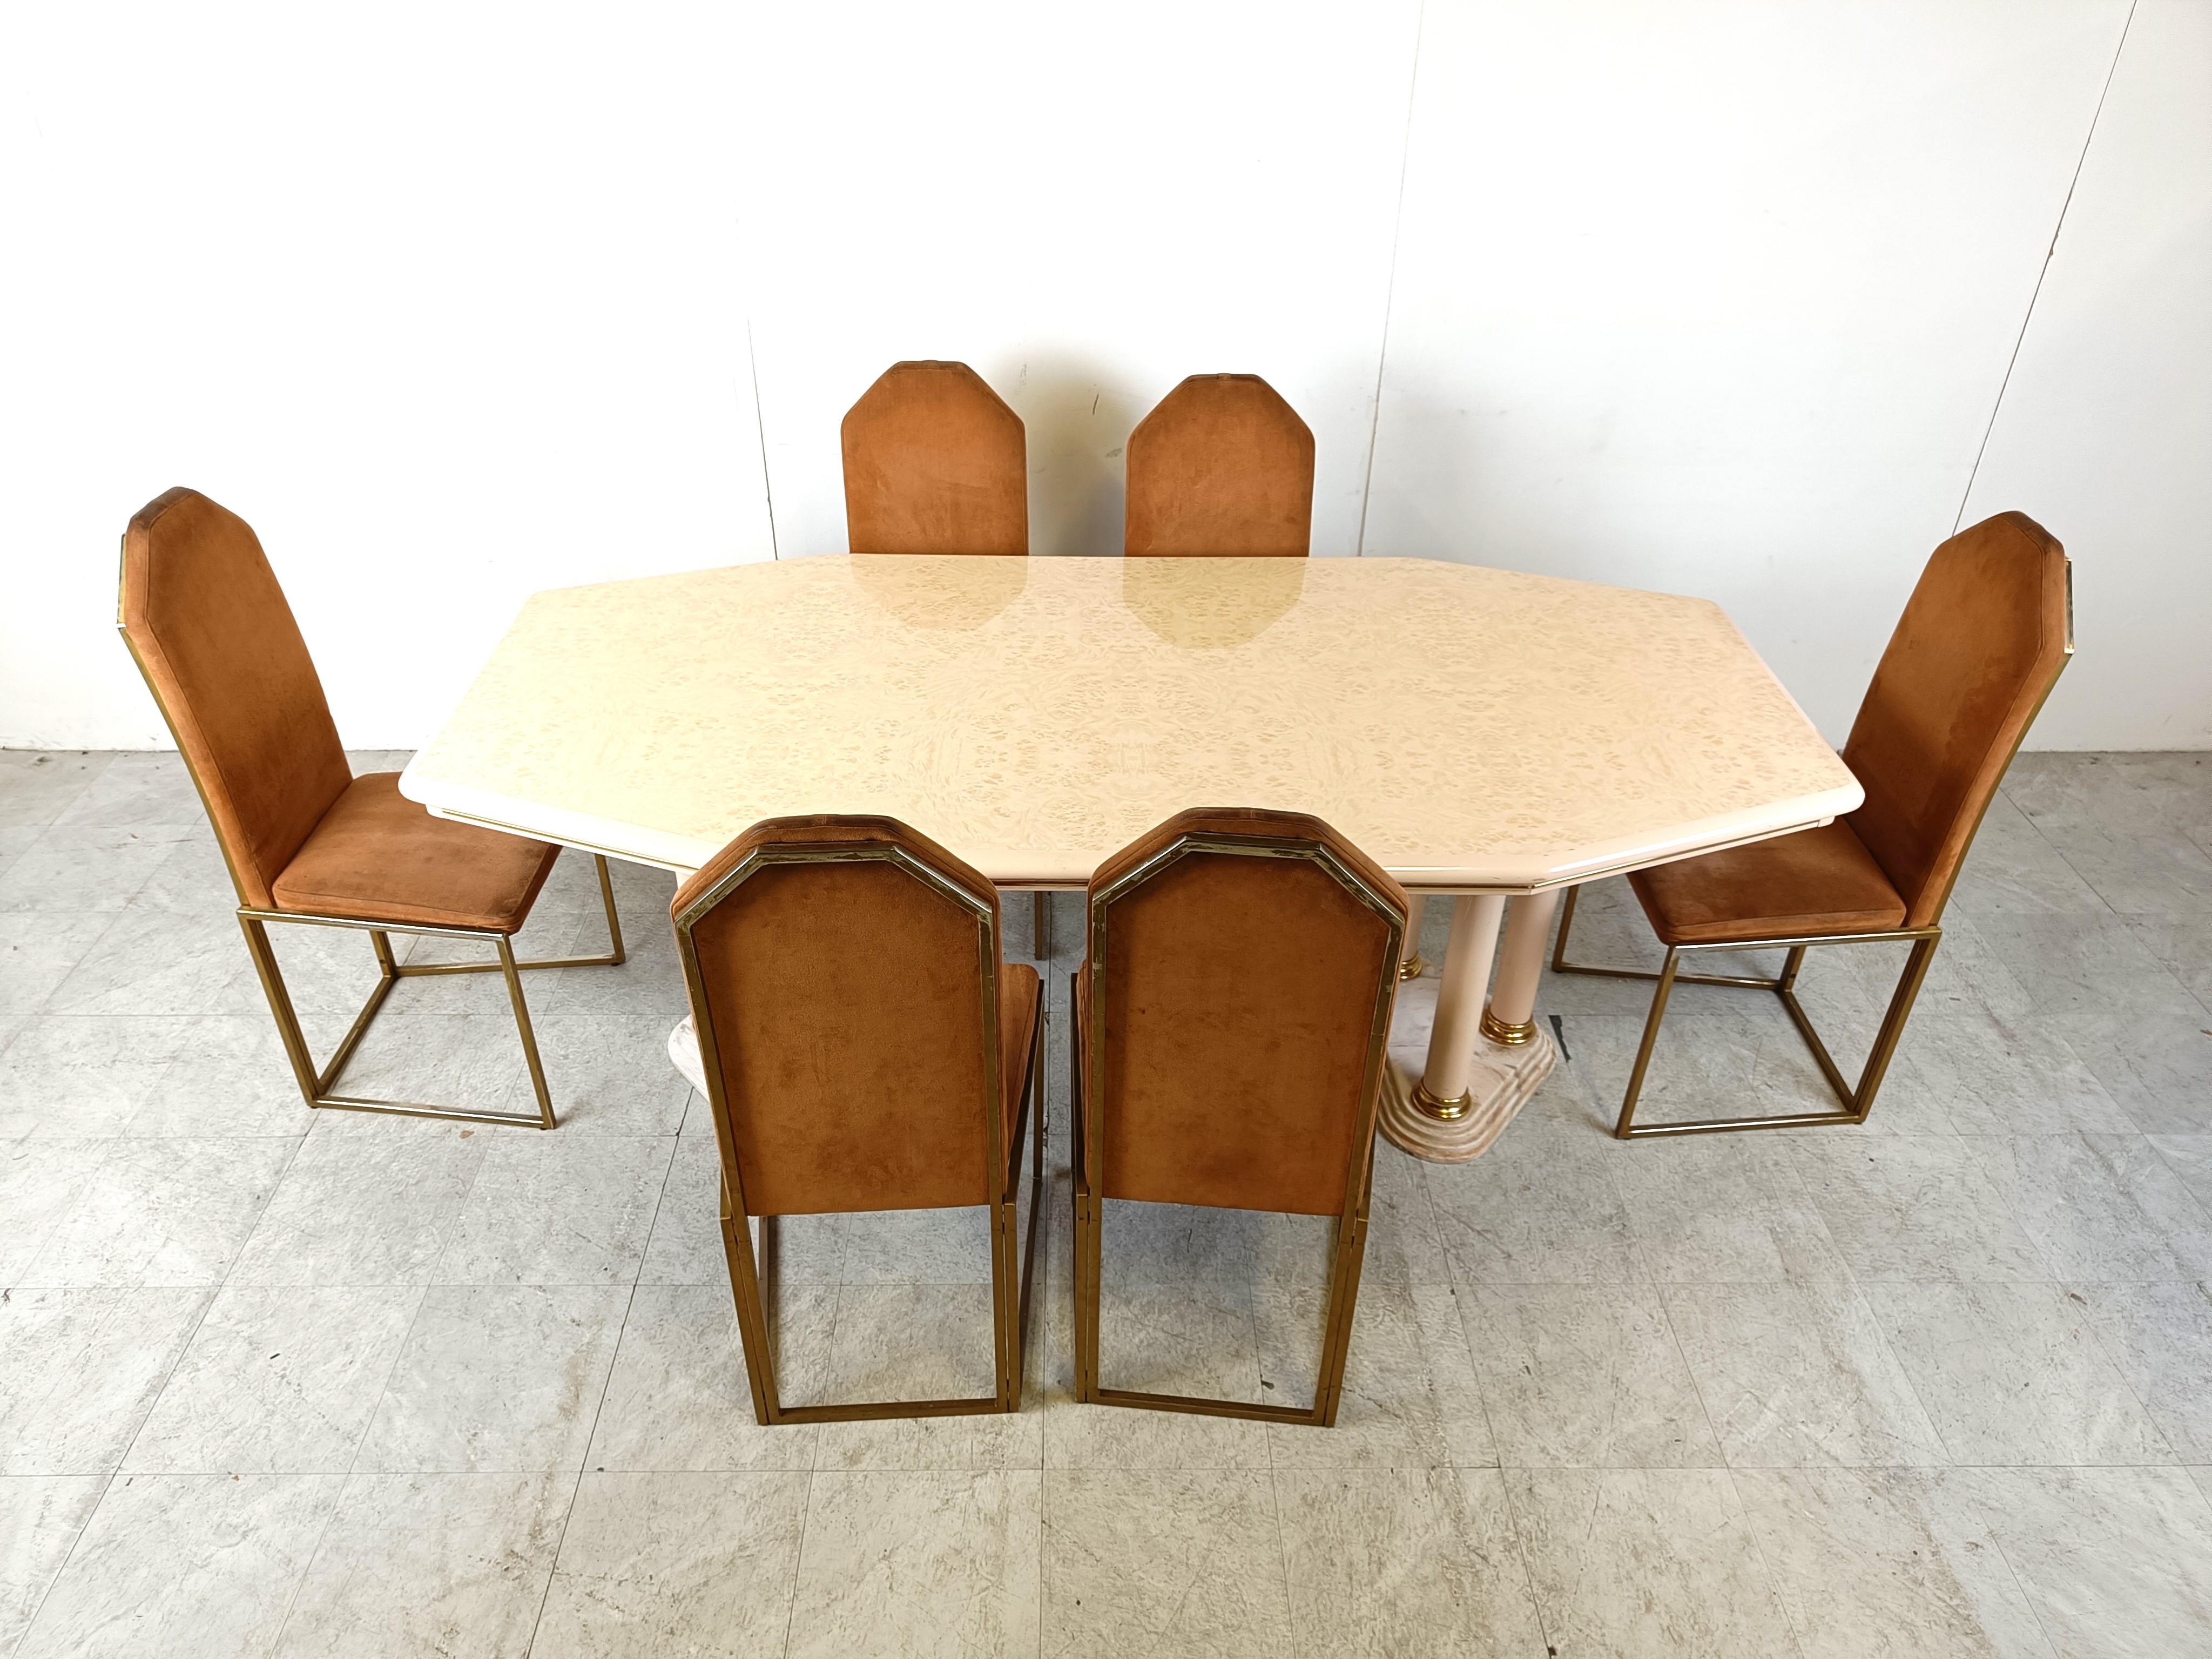 Table de salle à manger Hollywood regency - chic - avec une double base à 3 colonnes avec des plaques de marbre et de laiton et un plateau laqué beige.

Cette table de salle à manger majestueuse a un aspect très 